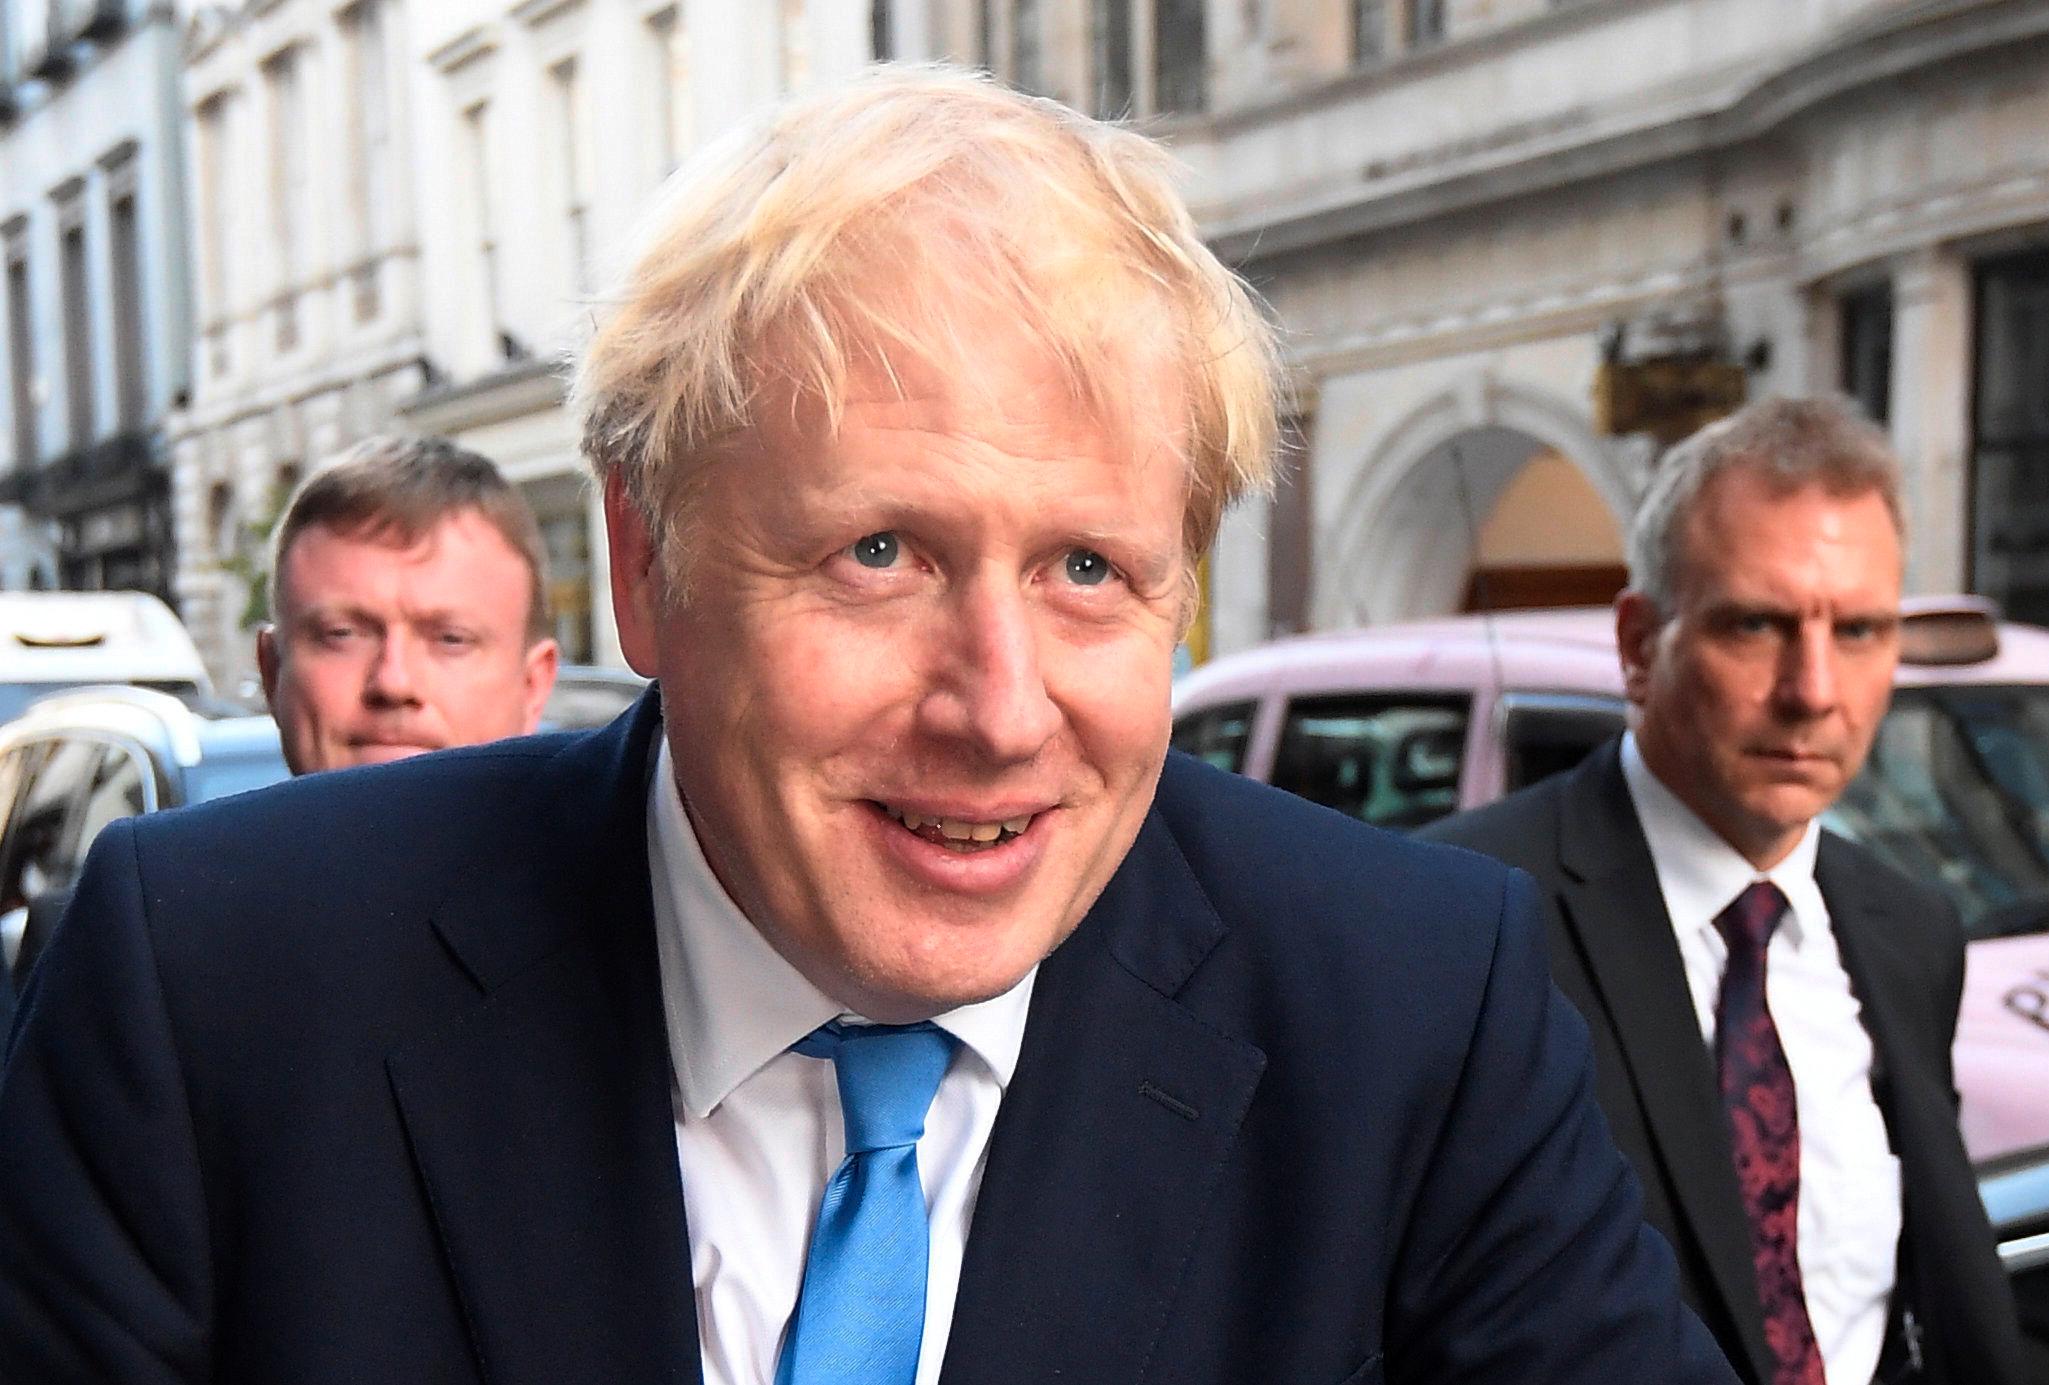 STATSMINISTER: Boris Johnson ble statsminister 23. juni 2019 og signatursveisen med blonde lokker dratt foran ansiktet var på plass. Foto: Reuters